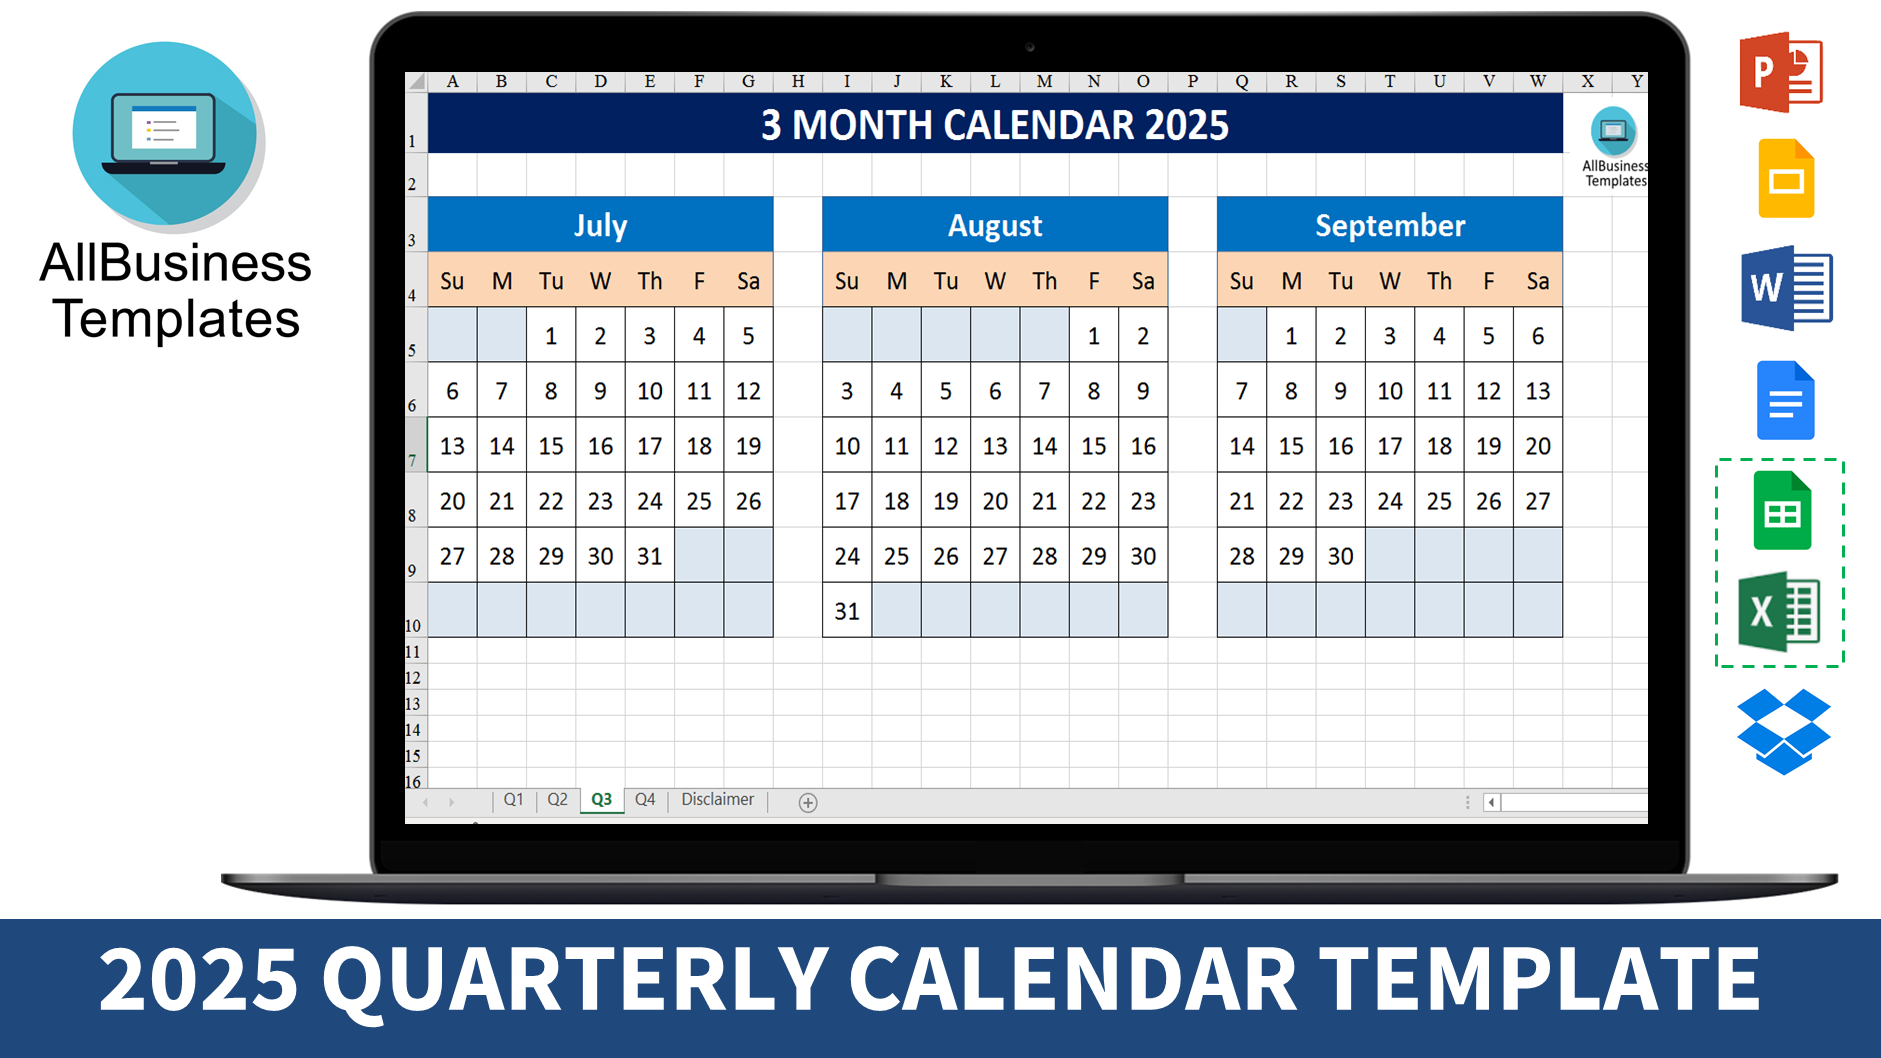 3 month calendar 2025 modèles